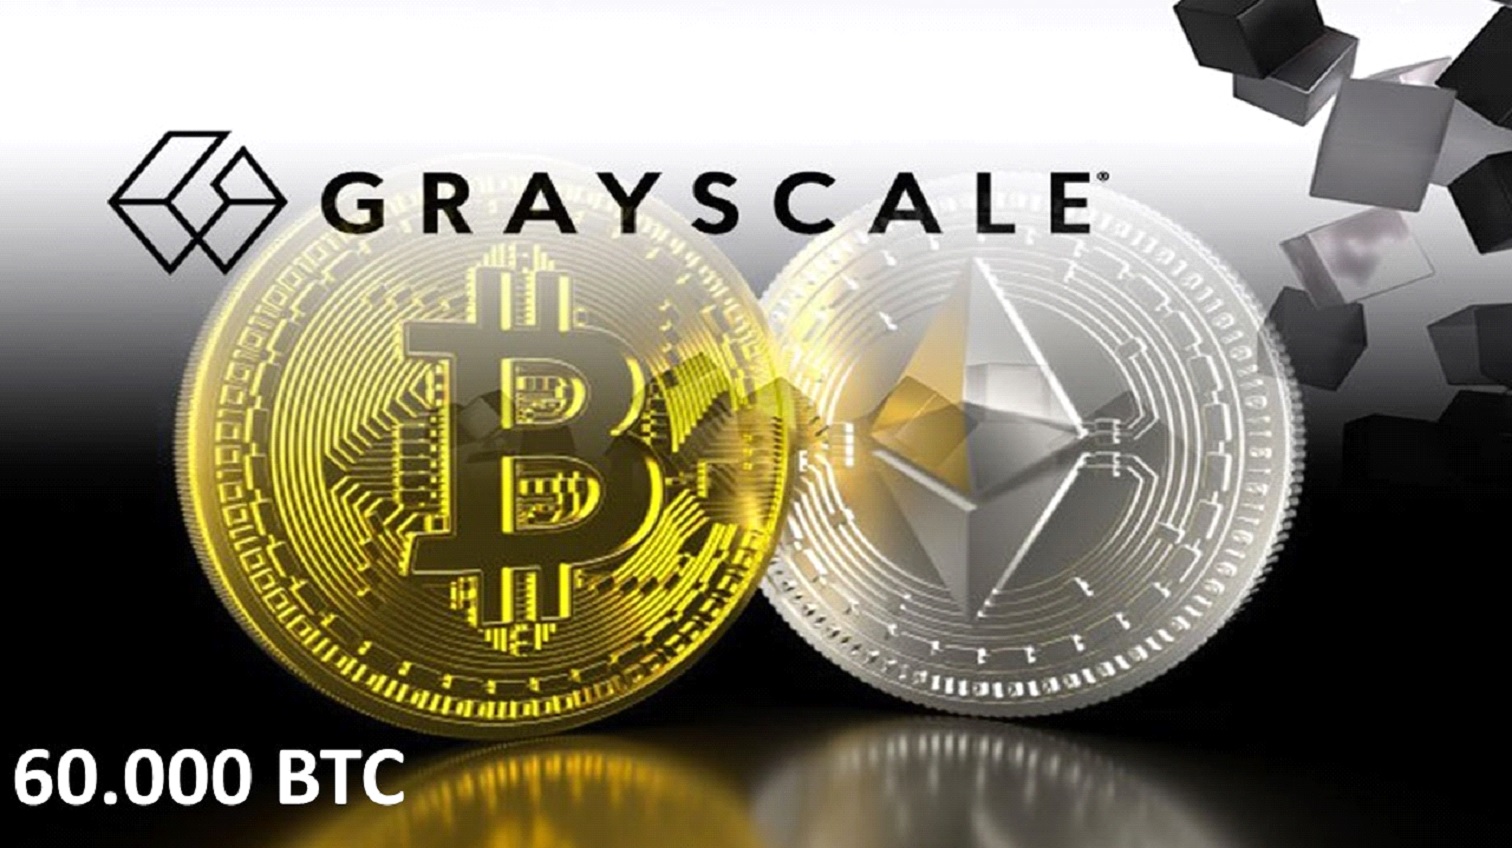 Quỹ đầu tư Grayscale sở hữu thêm 60.000 BTC trong tháng qua